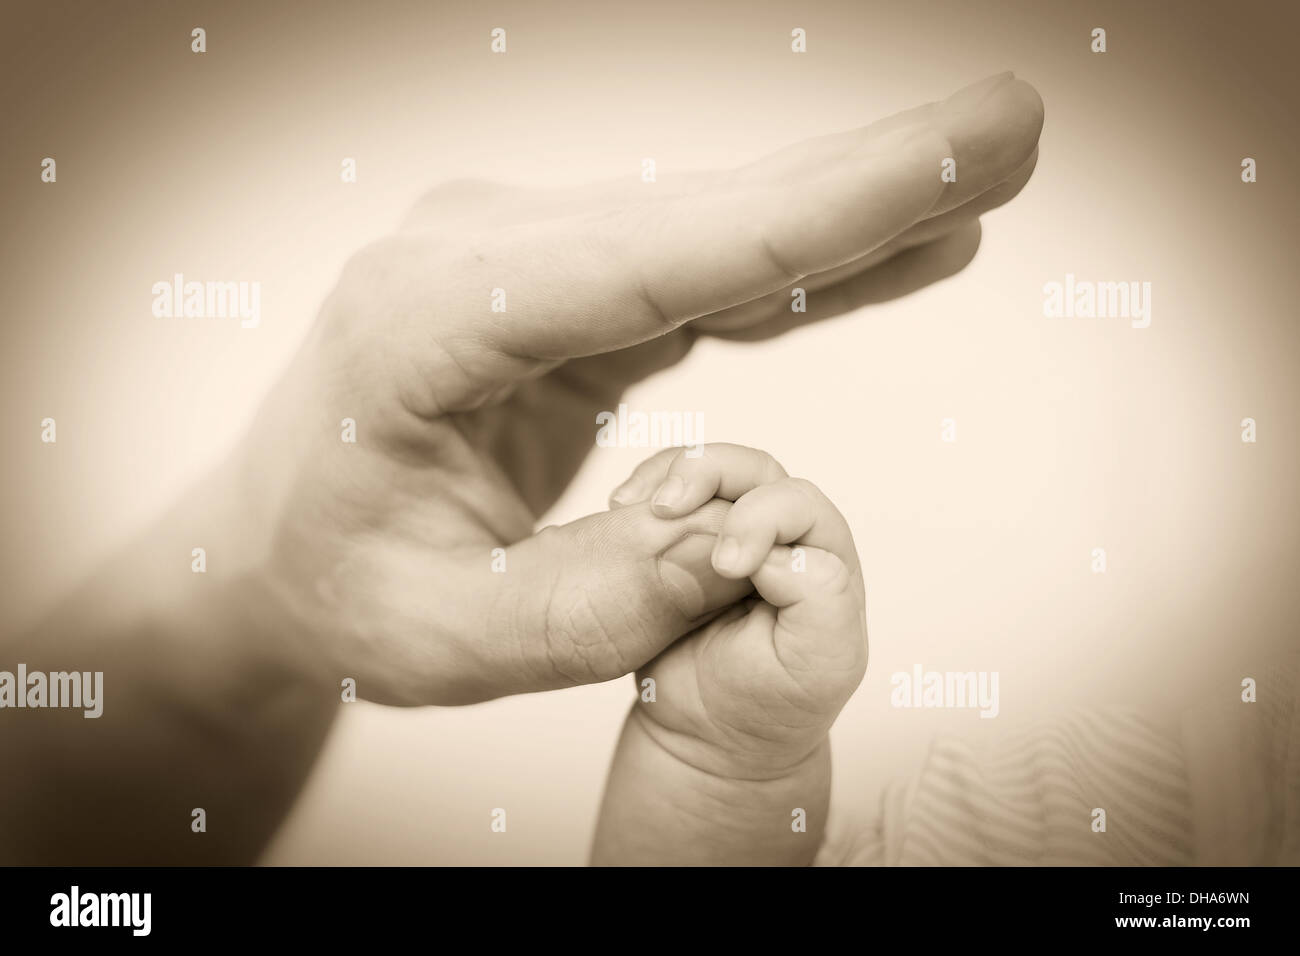 Concetto di amore e famiglia. Mani di madre e bambino closeup Foto Stock